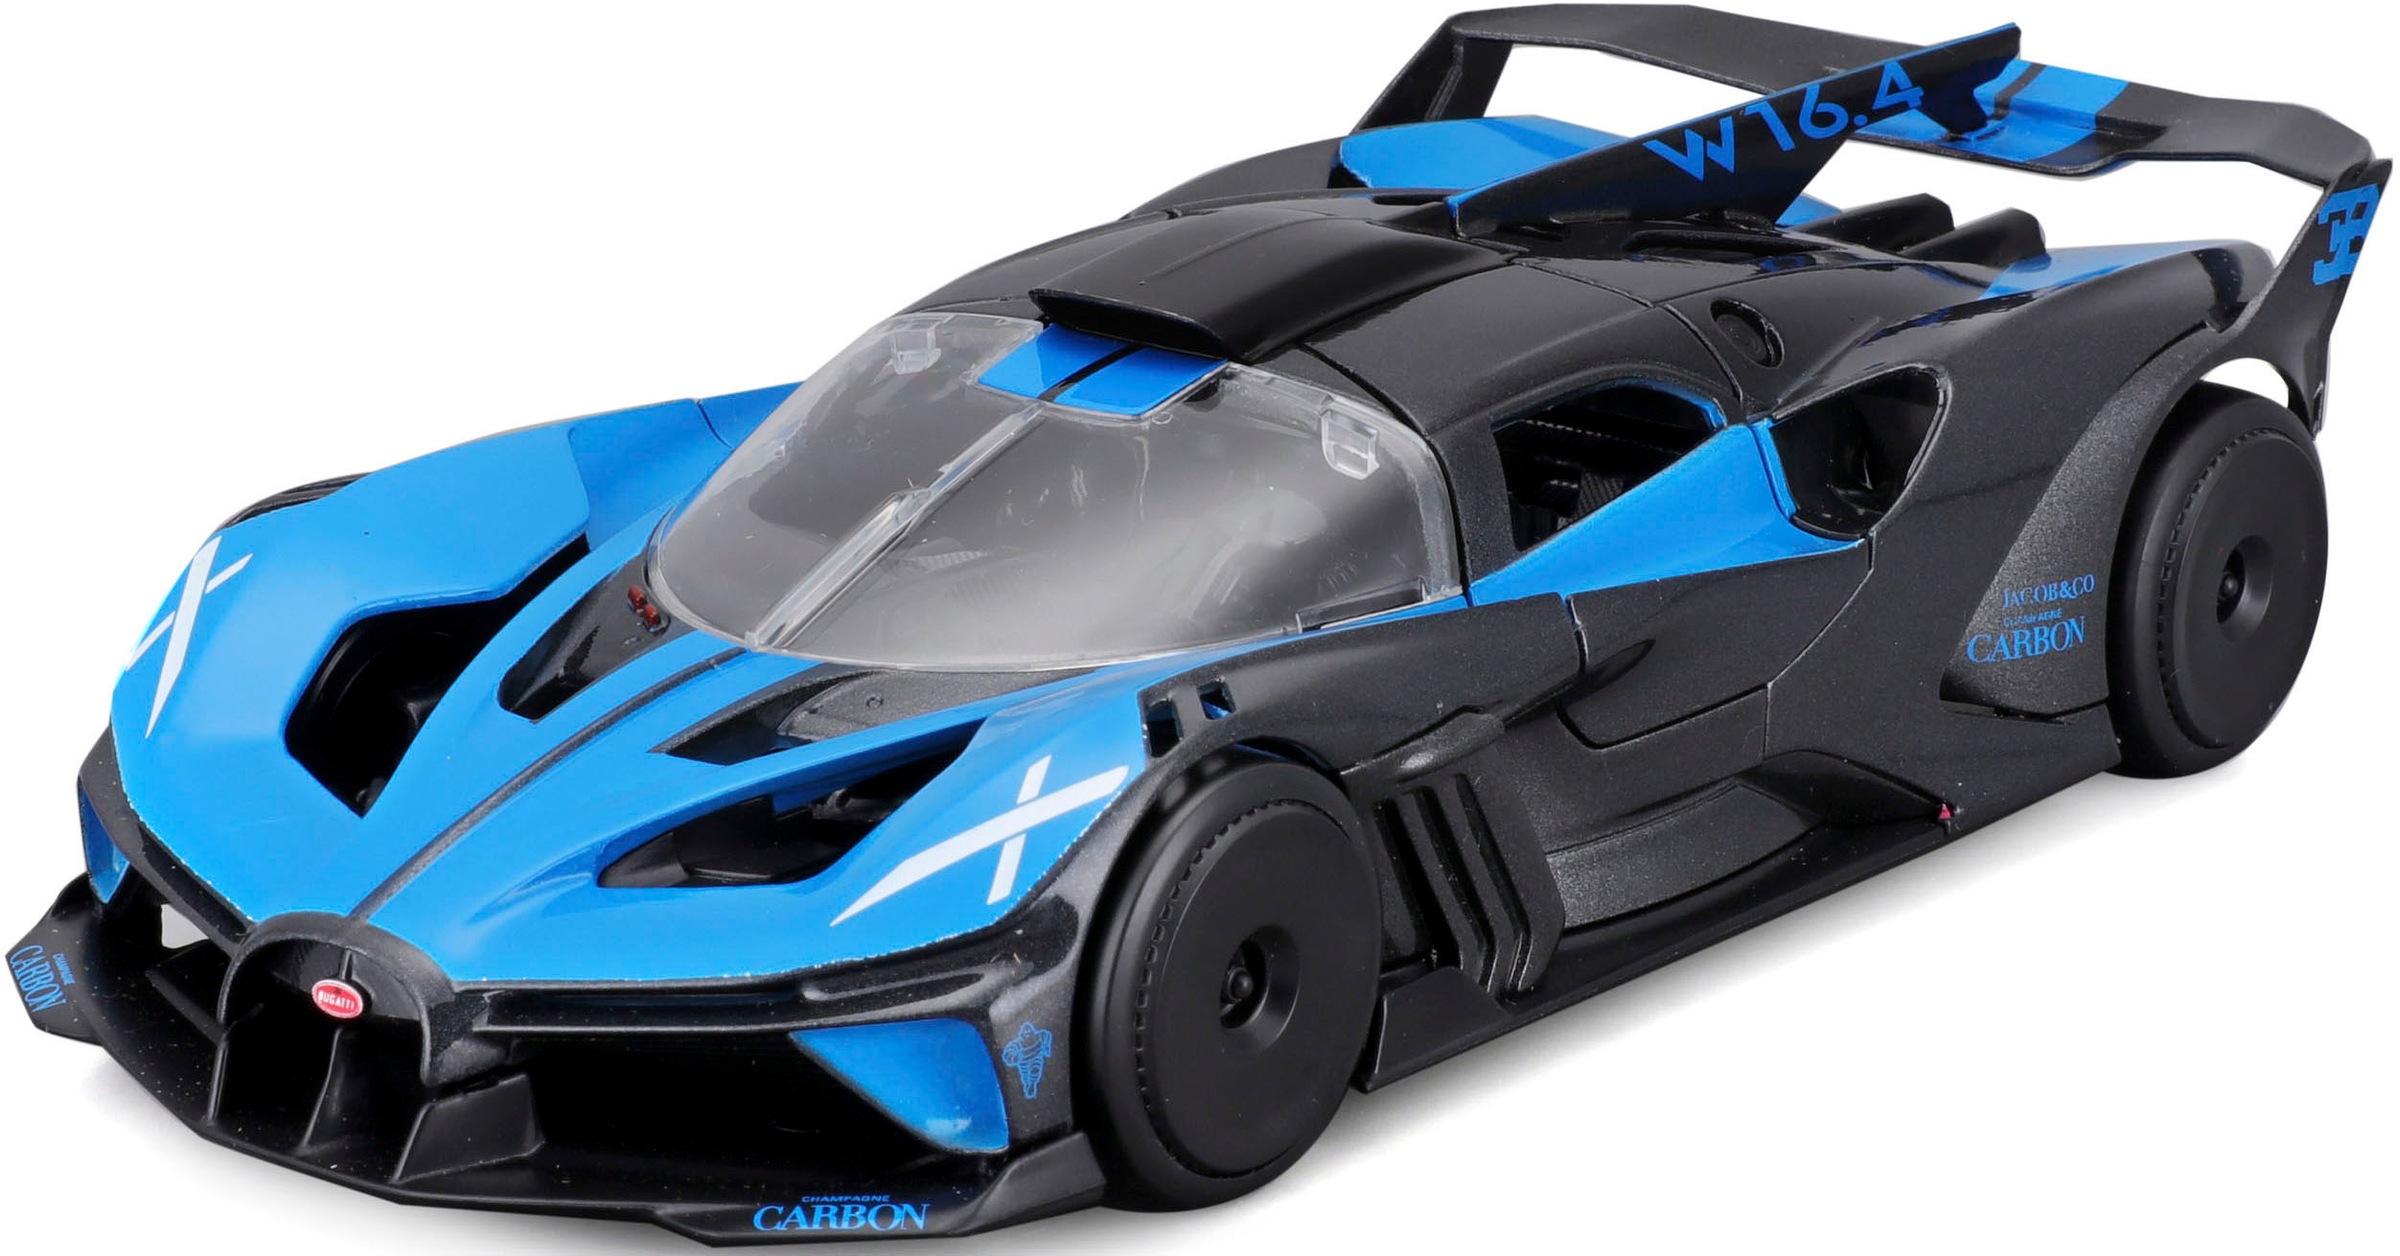 Maisto® Sammlerauto »Bugatti Bolide, blau«, 1:24